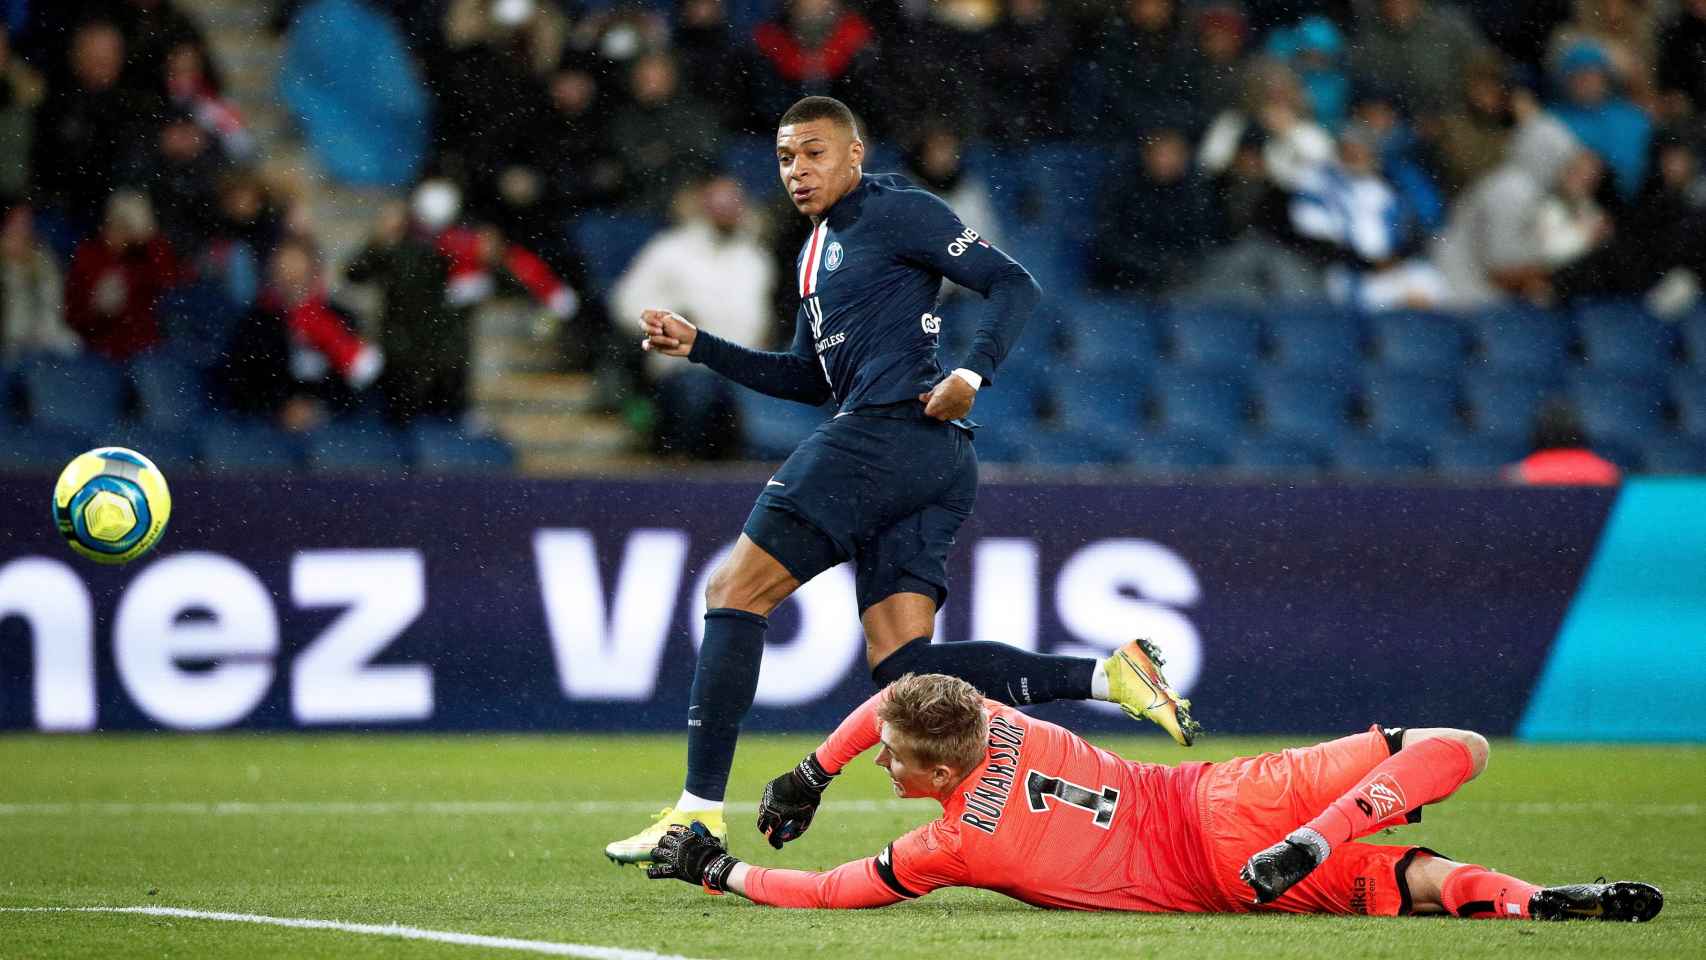 Mbappé marcando un gol contra el Lyon / EFE